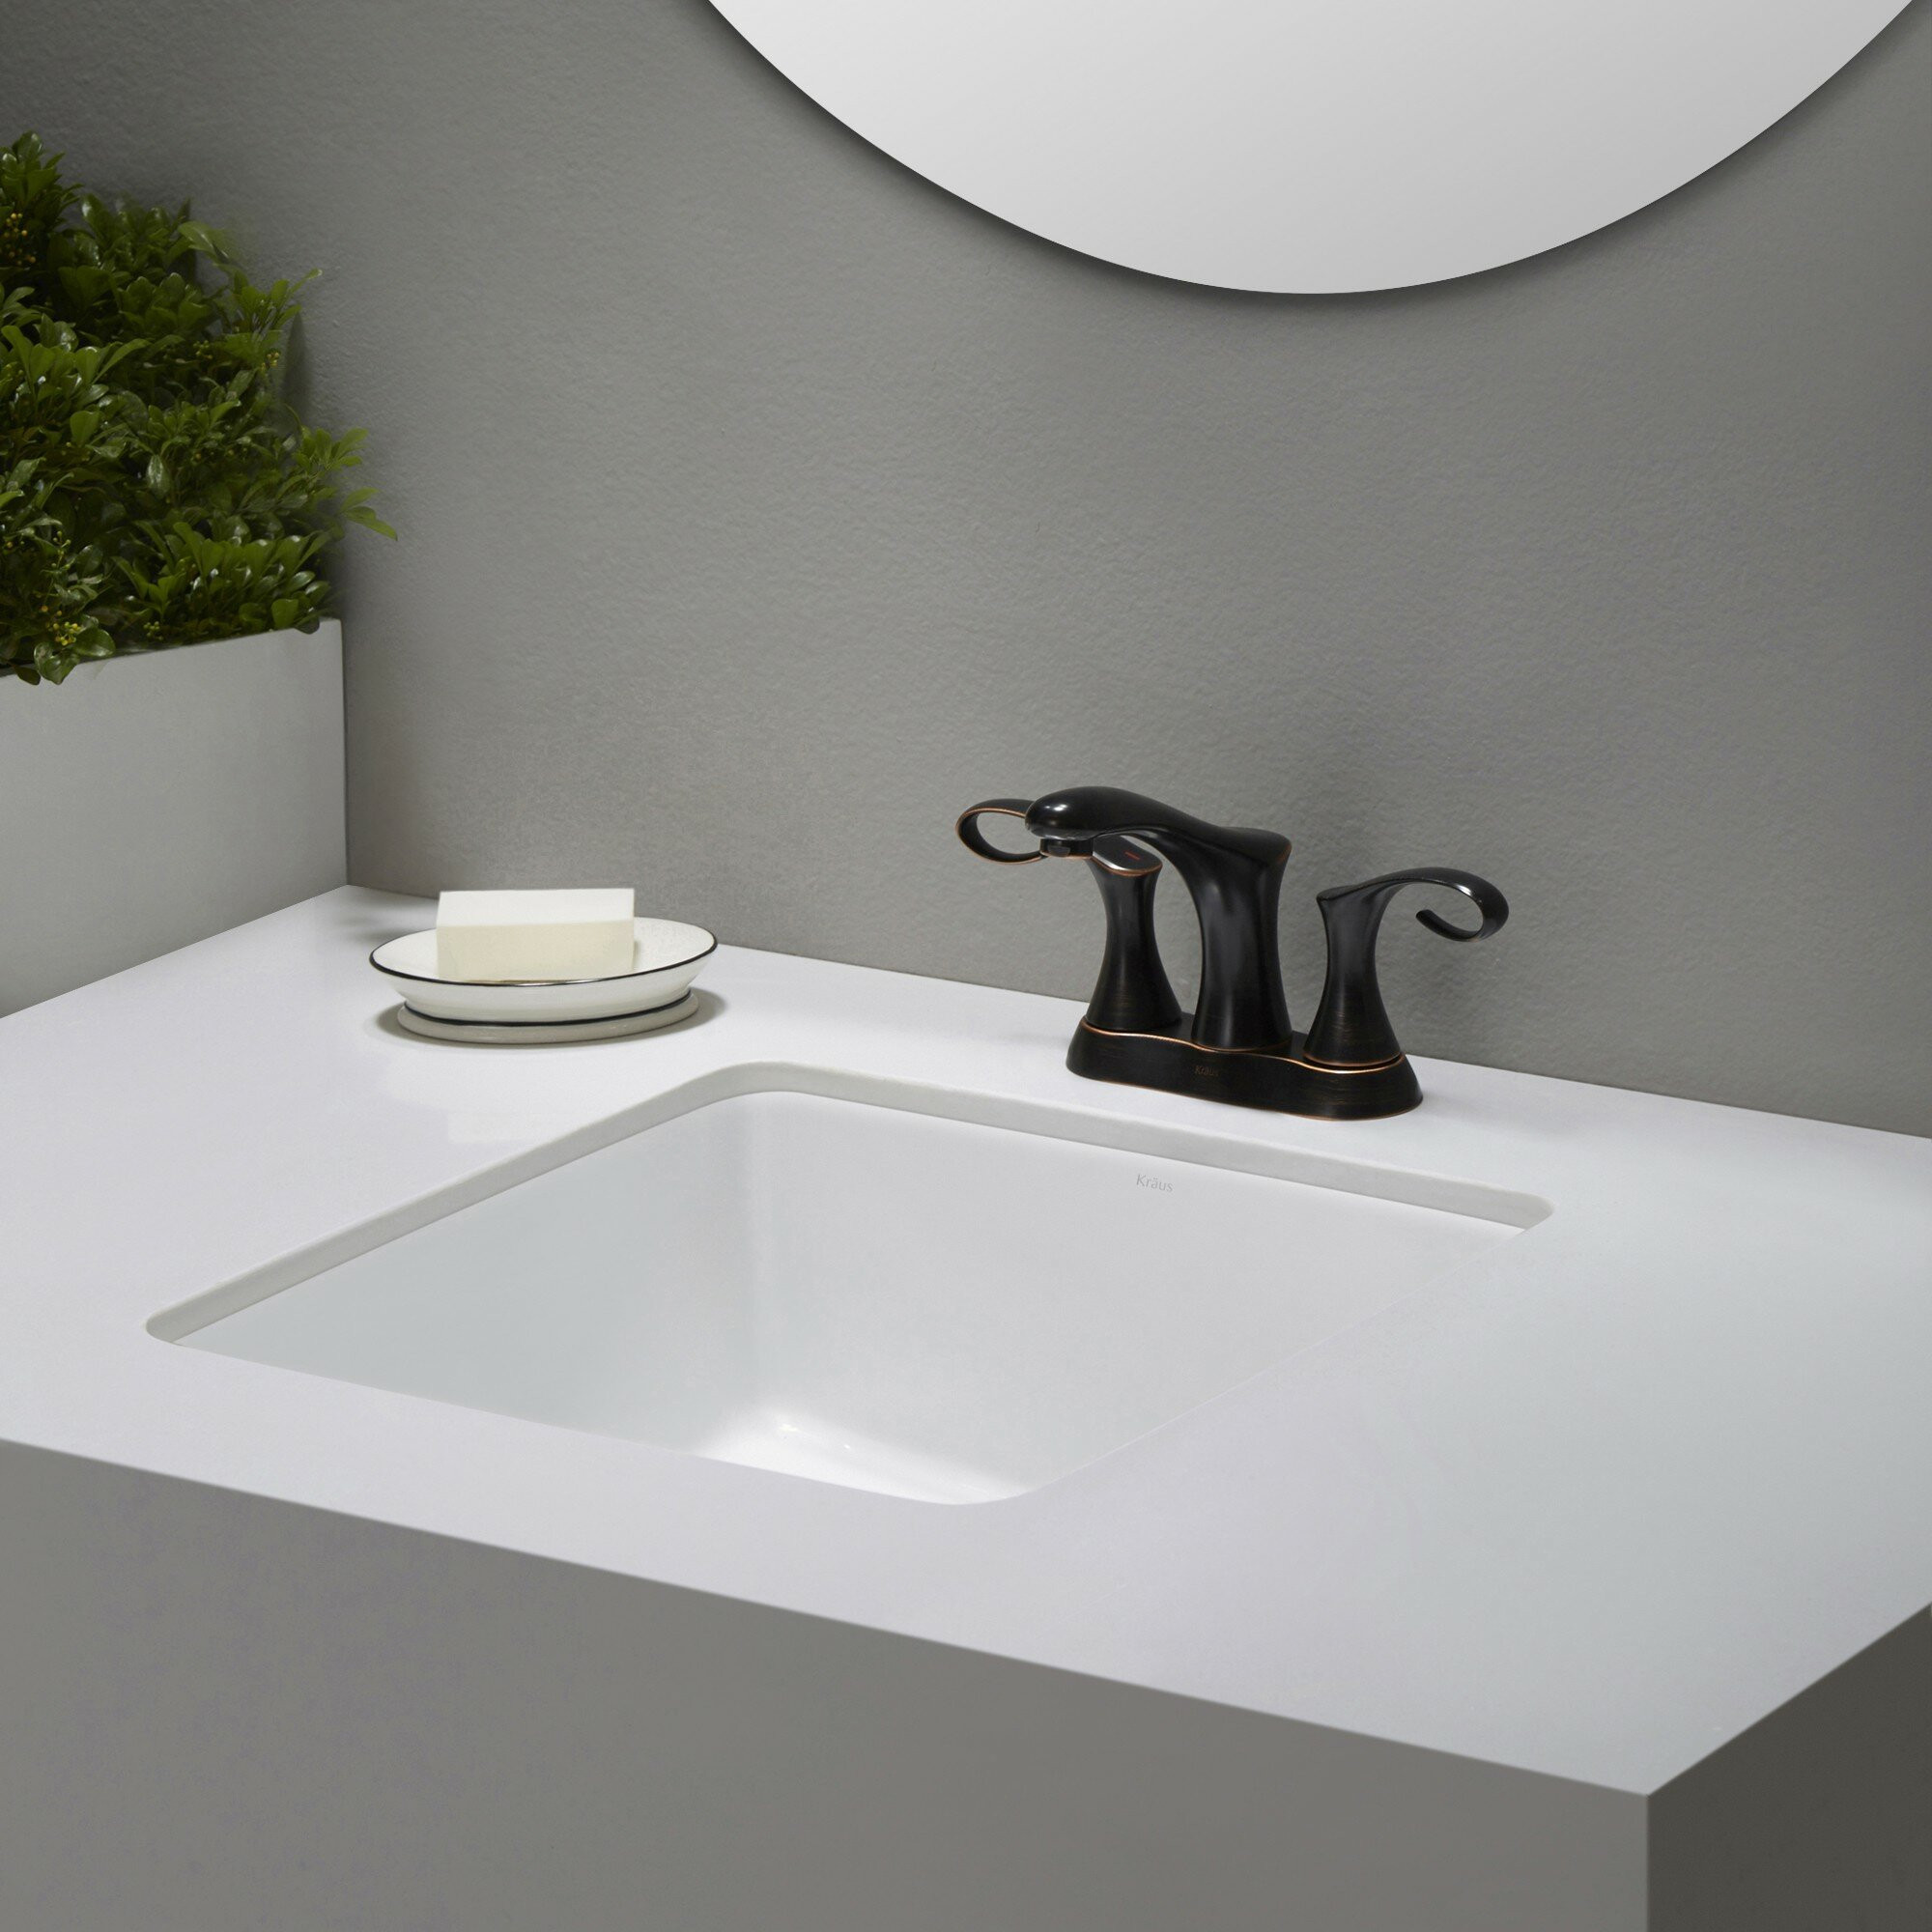 Bathroom Sink Undermount
 Elavo™ Ceramic Square Undermount Bathroom Sink with